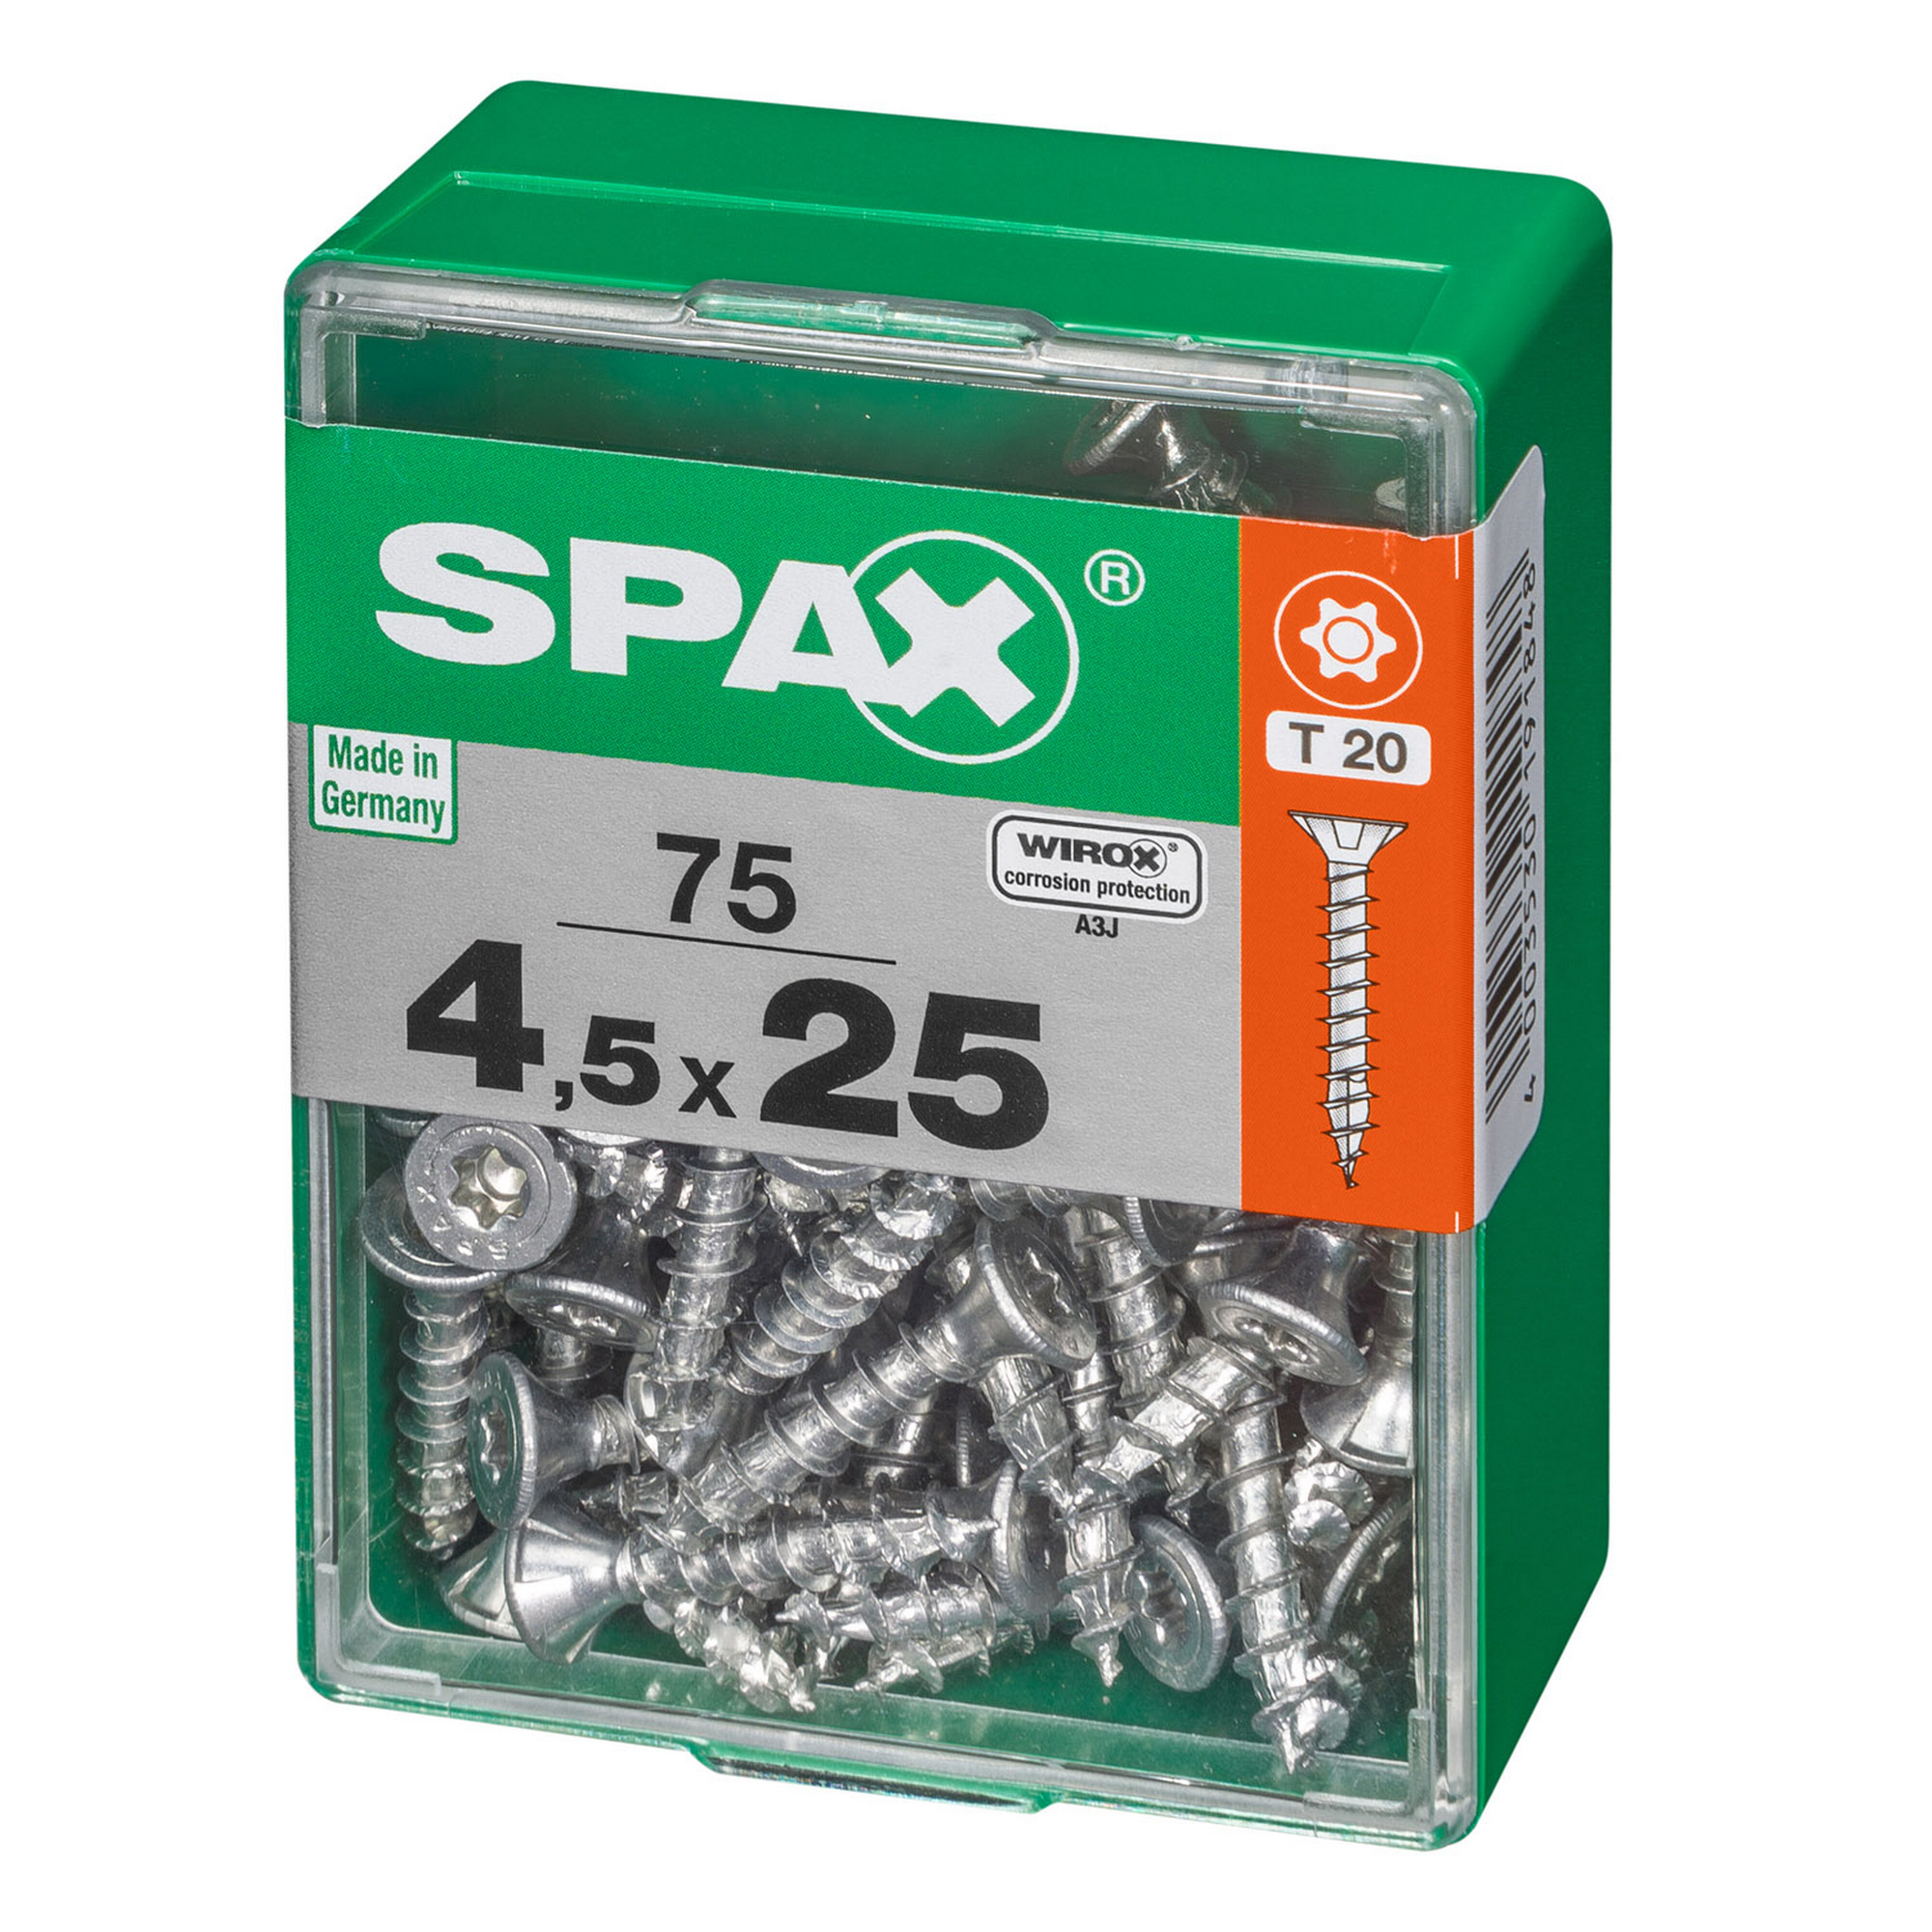 Spax Universalschrauben T-Star plus T20 Stahl 4,5 x 25 mm 75 Stück + product picture